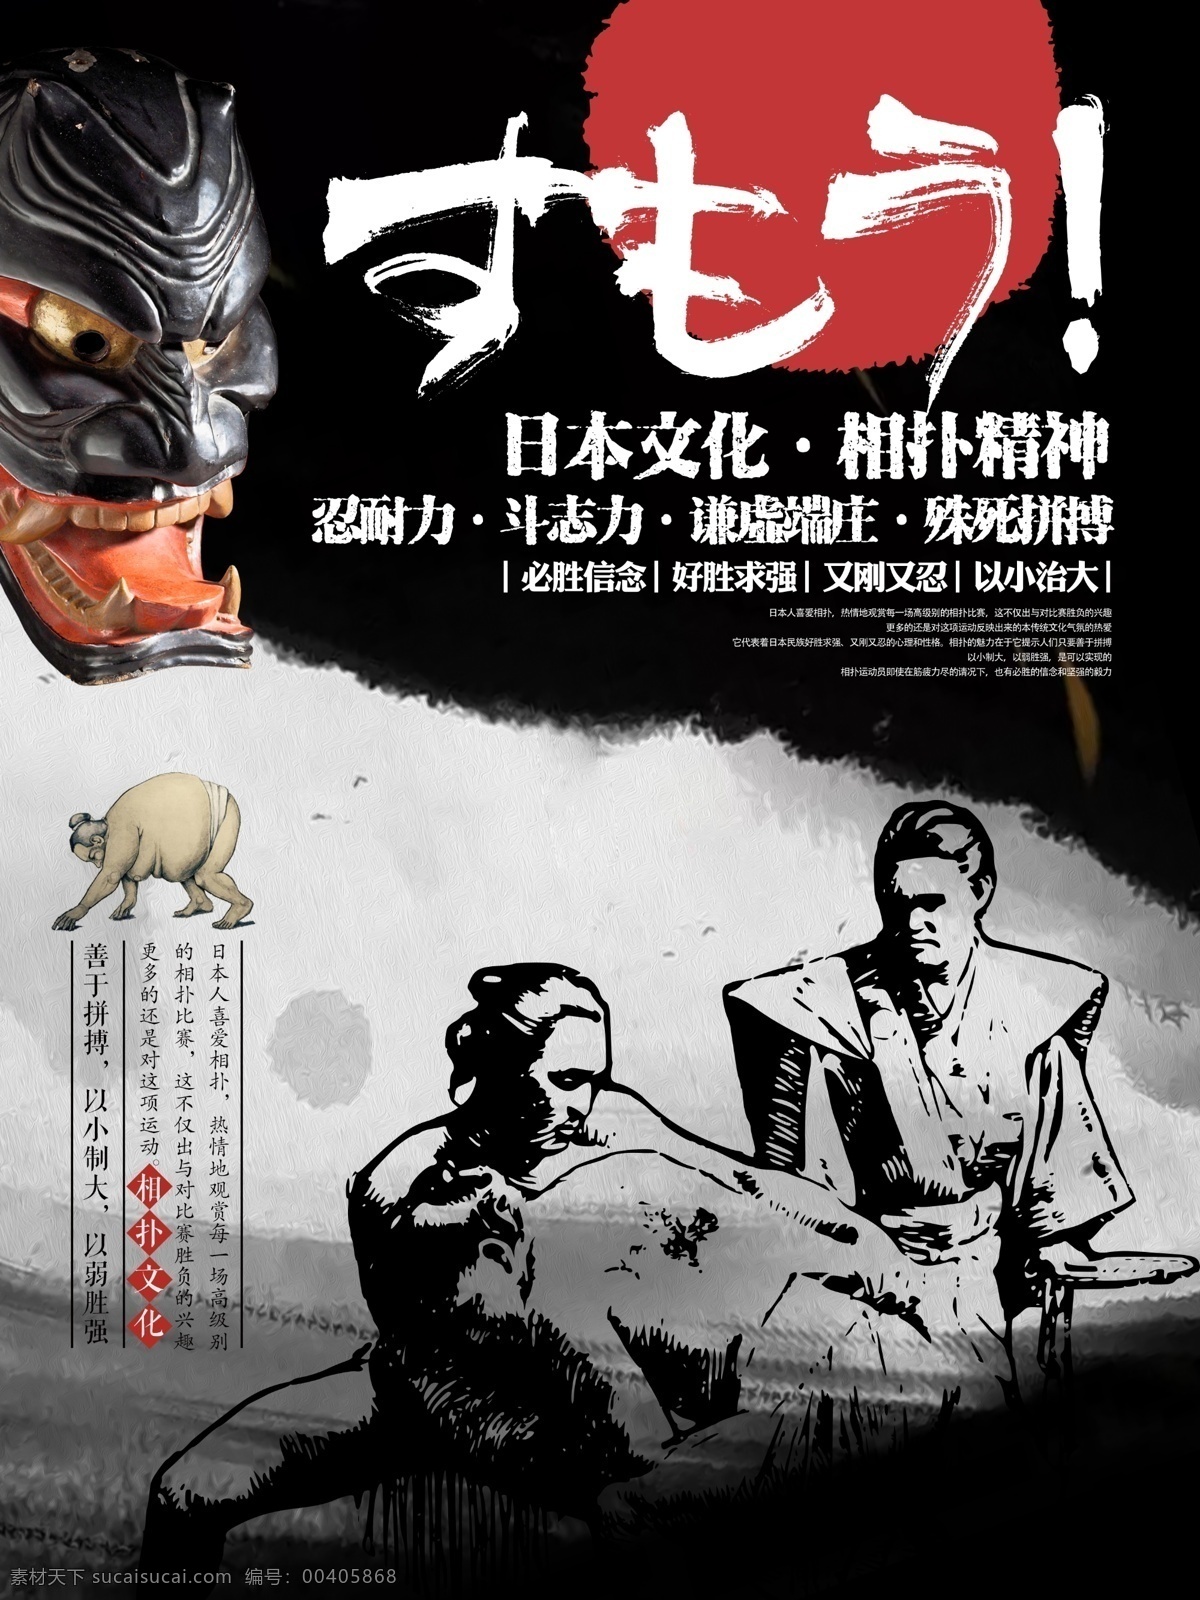 简约 日本 相扑 运动 文化 宣传海报 展板 水墨 宣传 海报